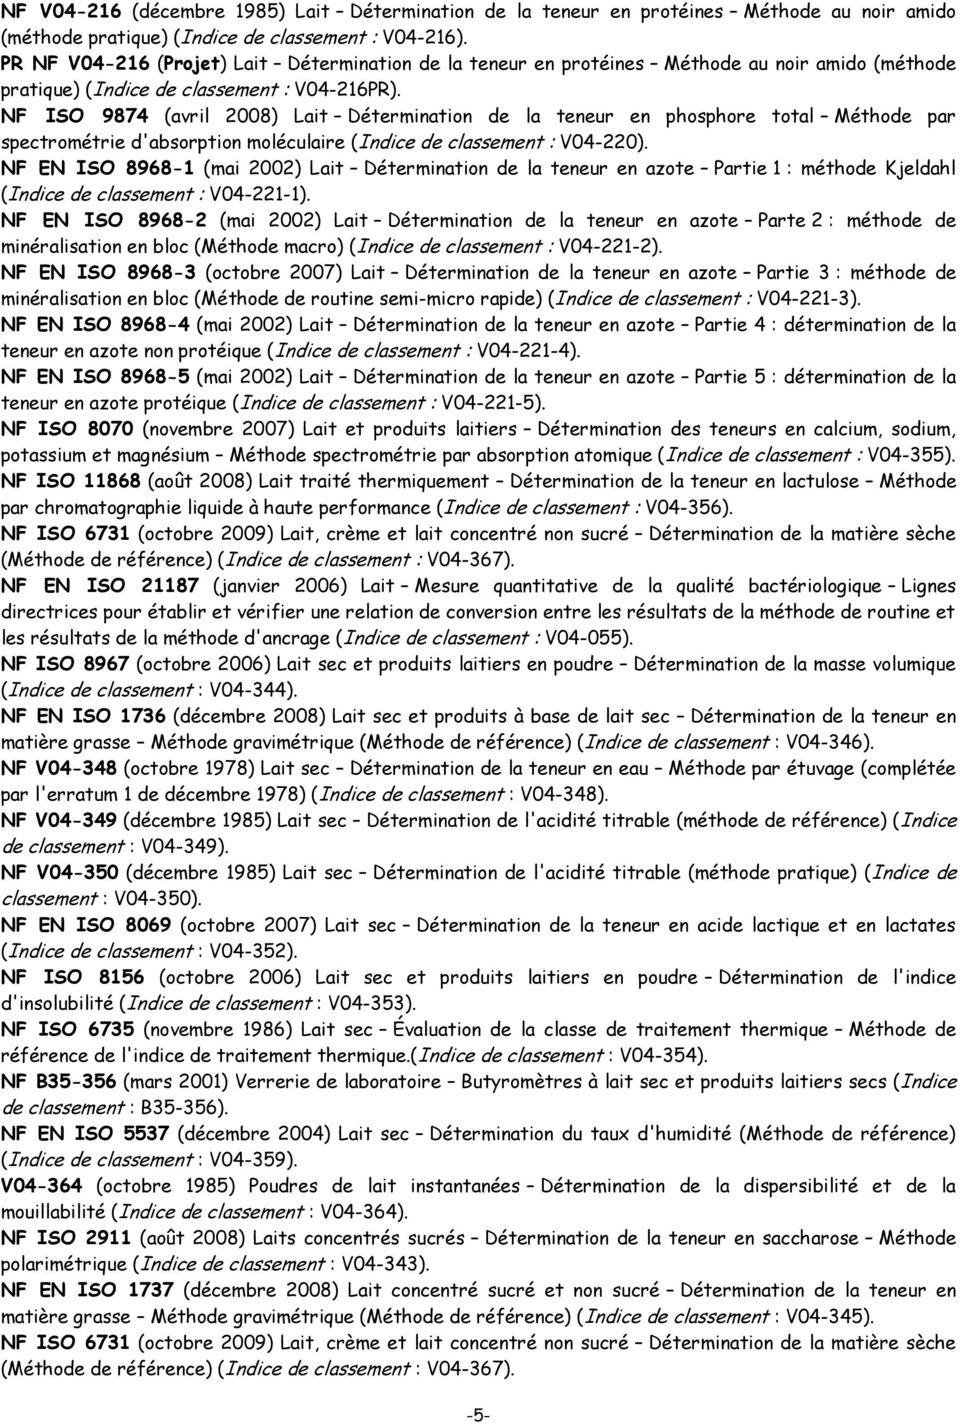 NF ISO 9874 (avril 2008) Lait Détermination de la teneur en phosphore total Méthode par spectrométrie d'absorption moléculaire (Indice de classement : V04-220).